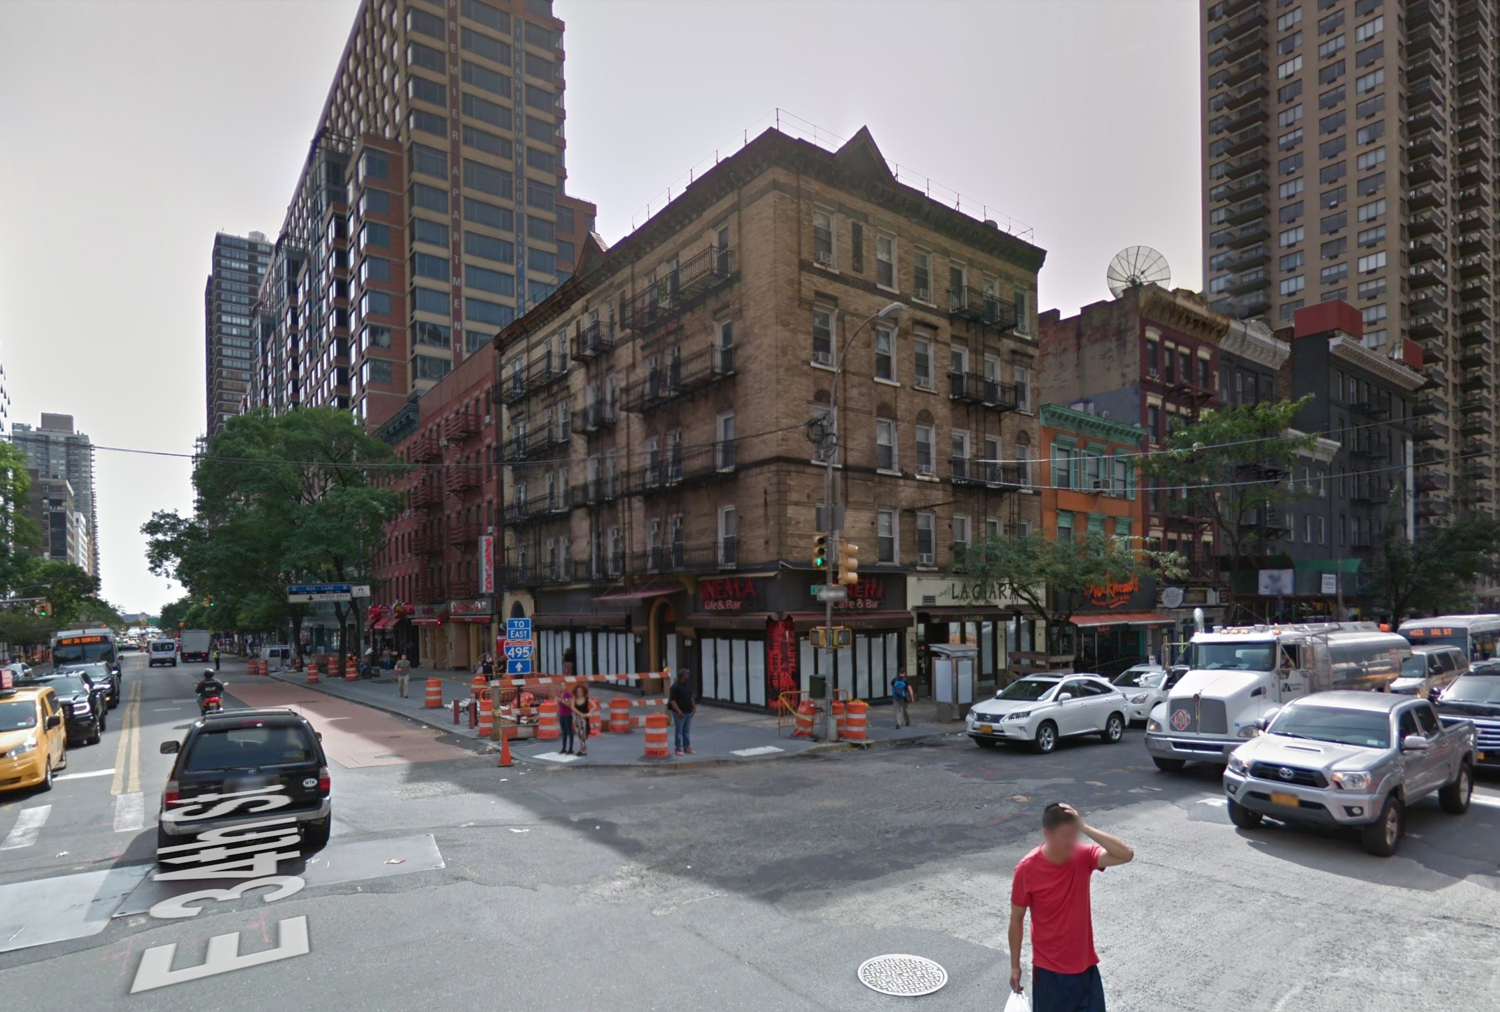 501 Third Avenue, via Google Maps